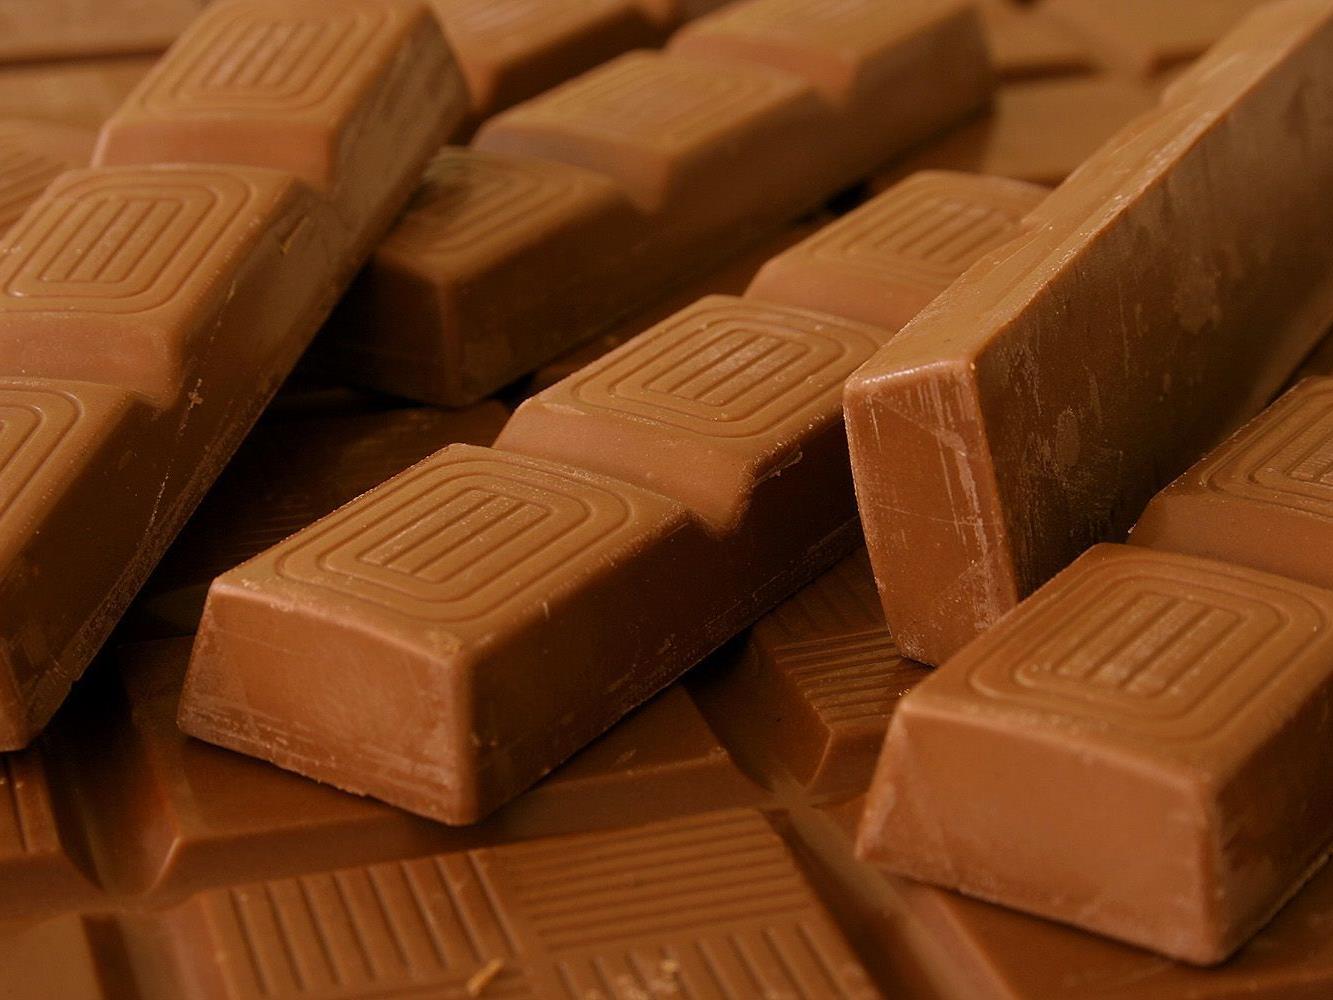 Oftmals steckt Kinderarbeit hinter Dumping-Schokolade